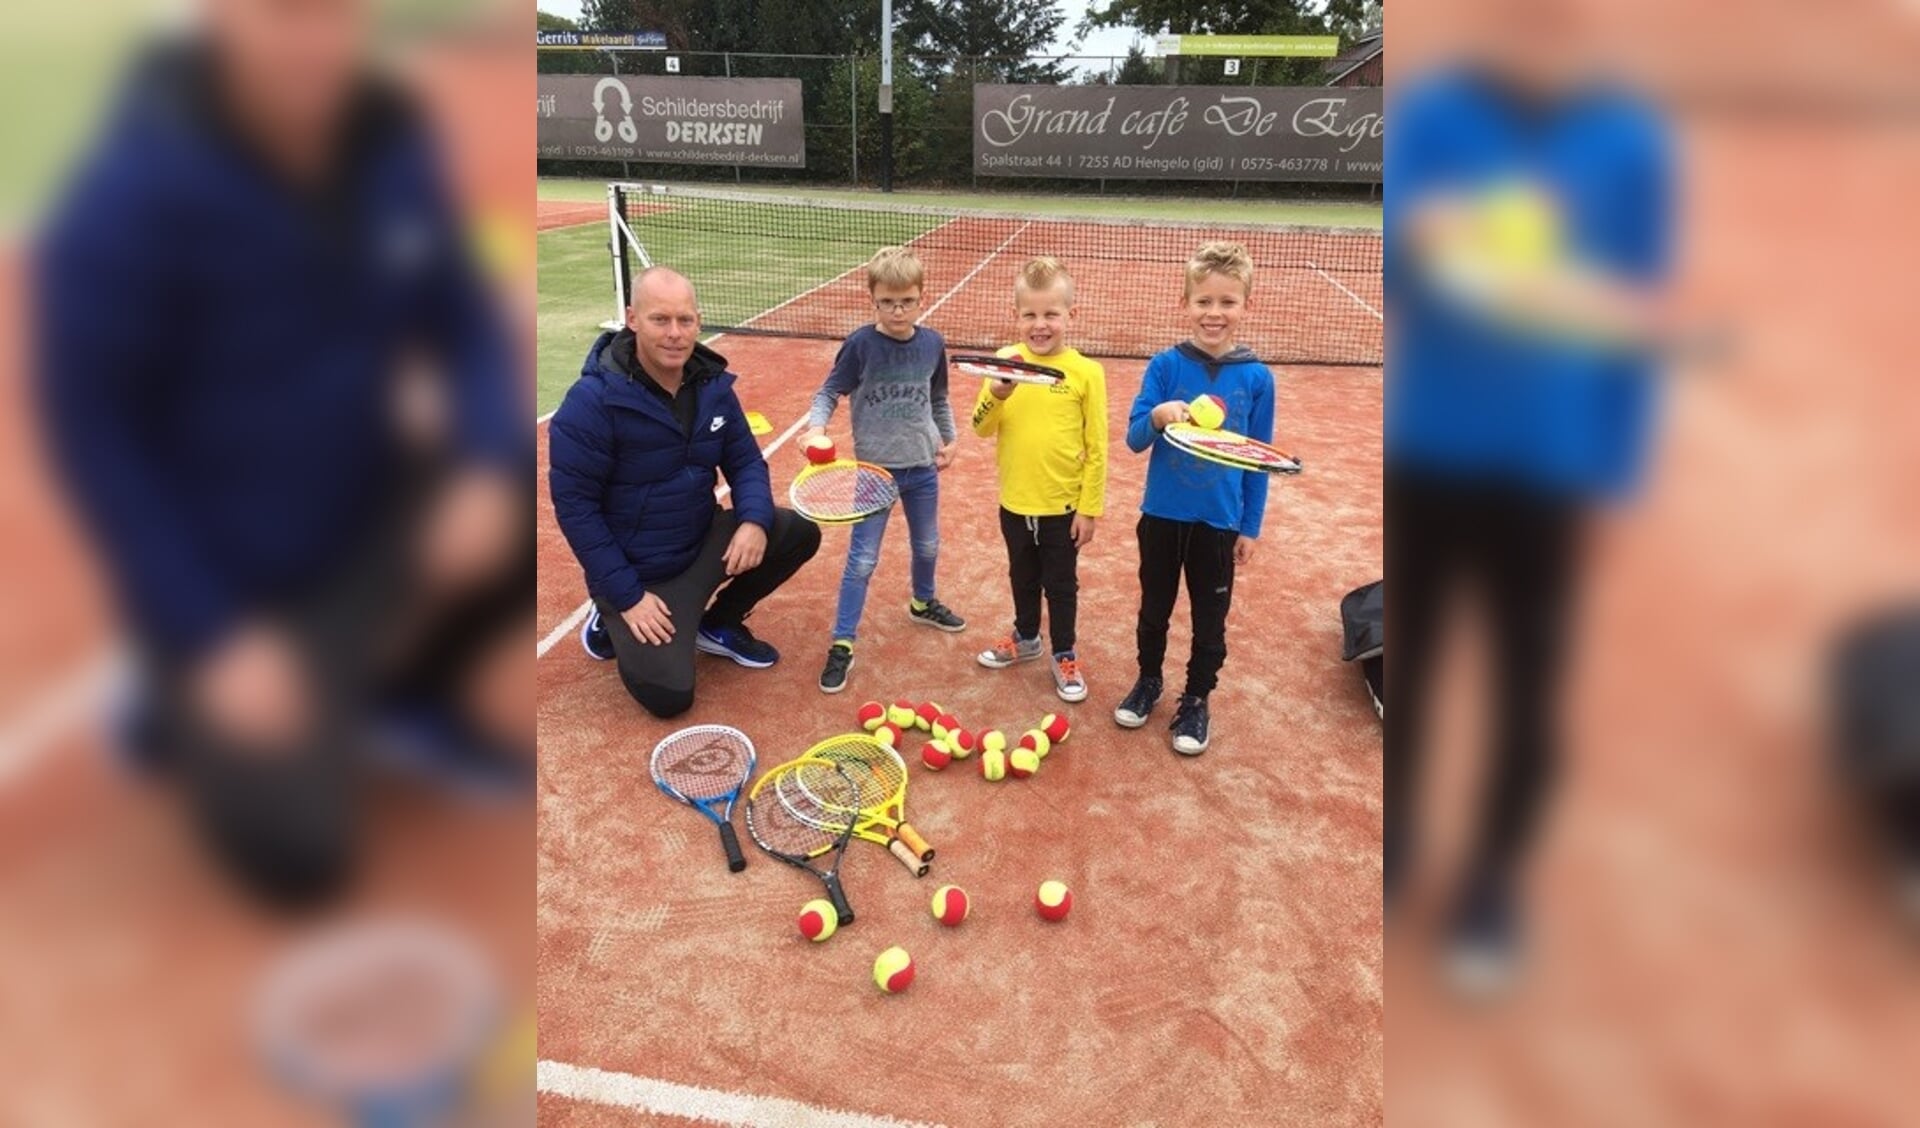 Tennisleraar Niek met trotse tennissers (v.l.n.r.) Gideon, Cas en Jurre. Foto: Nienke Grootbod